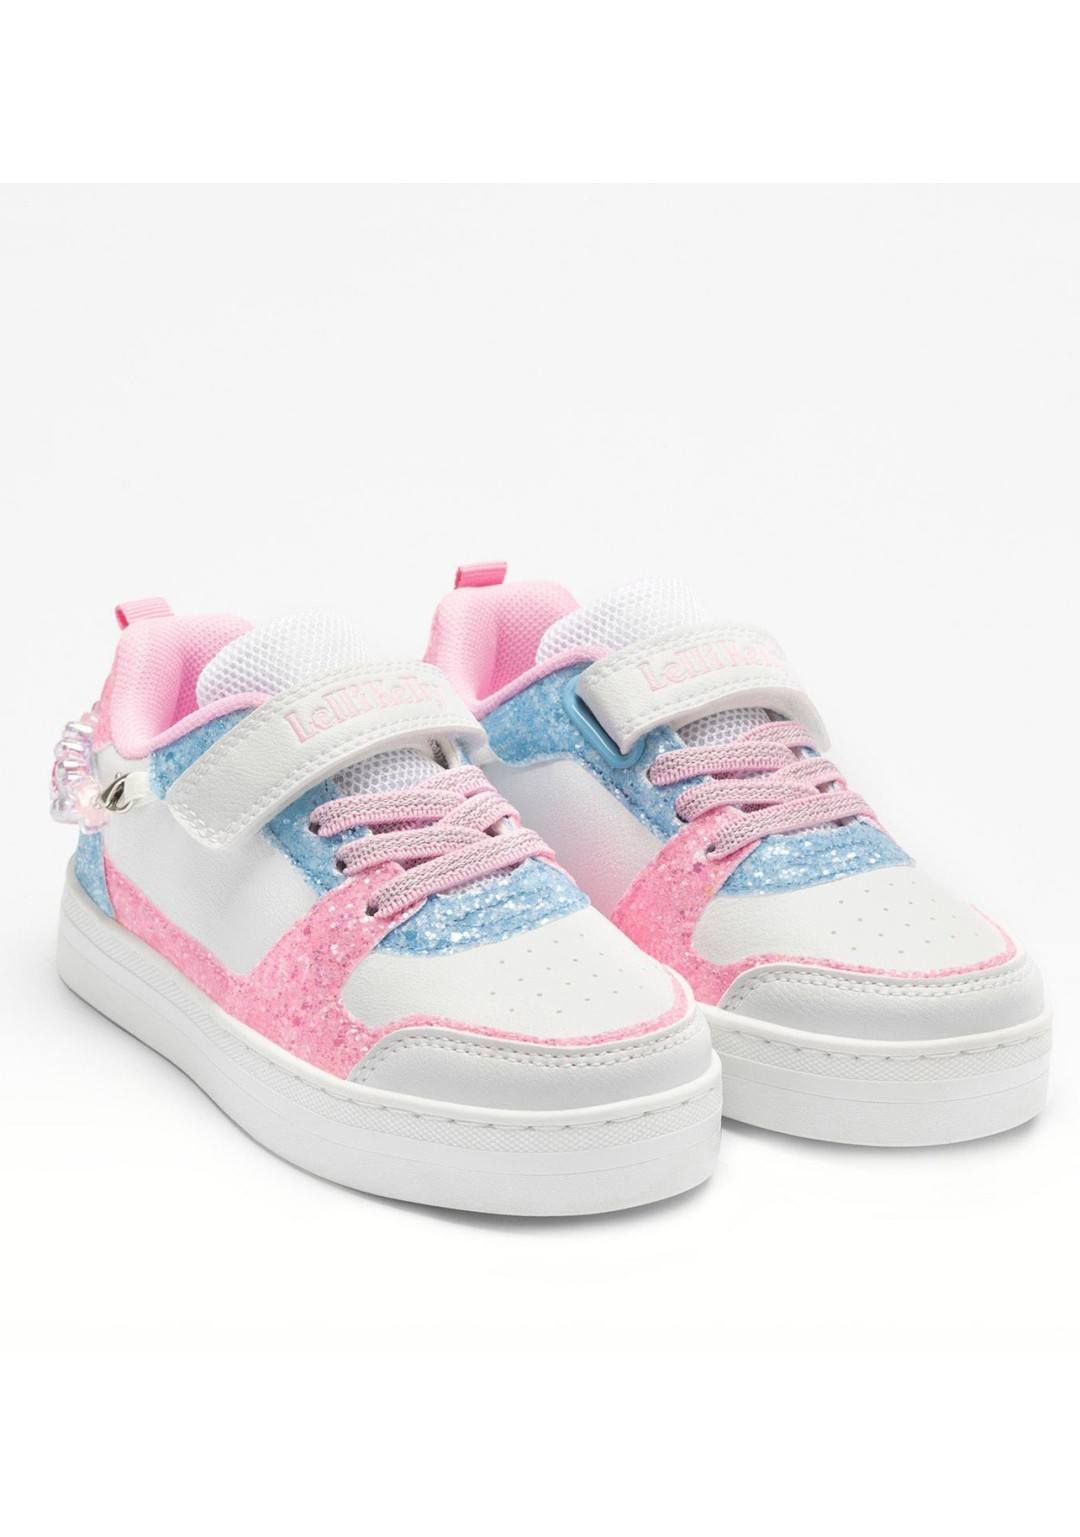 Lelli Kelly - Sneaker bracciale - Bambine e ragazze - LKAA4010